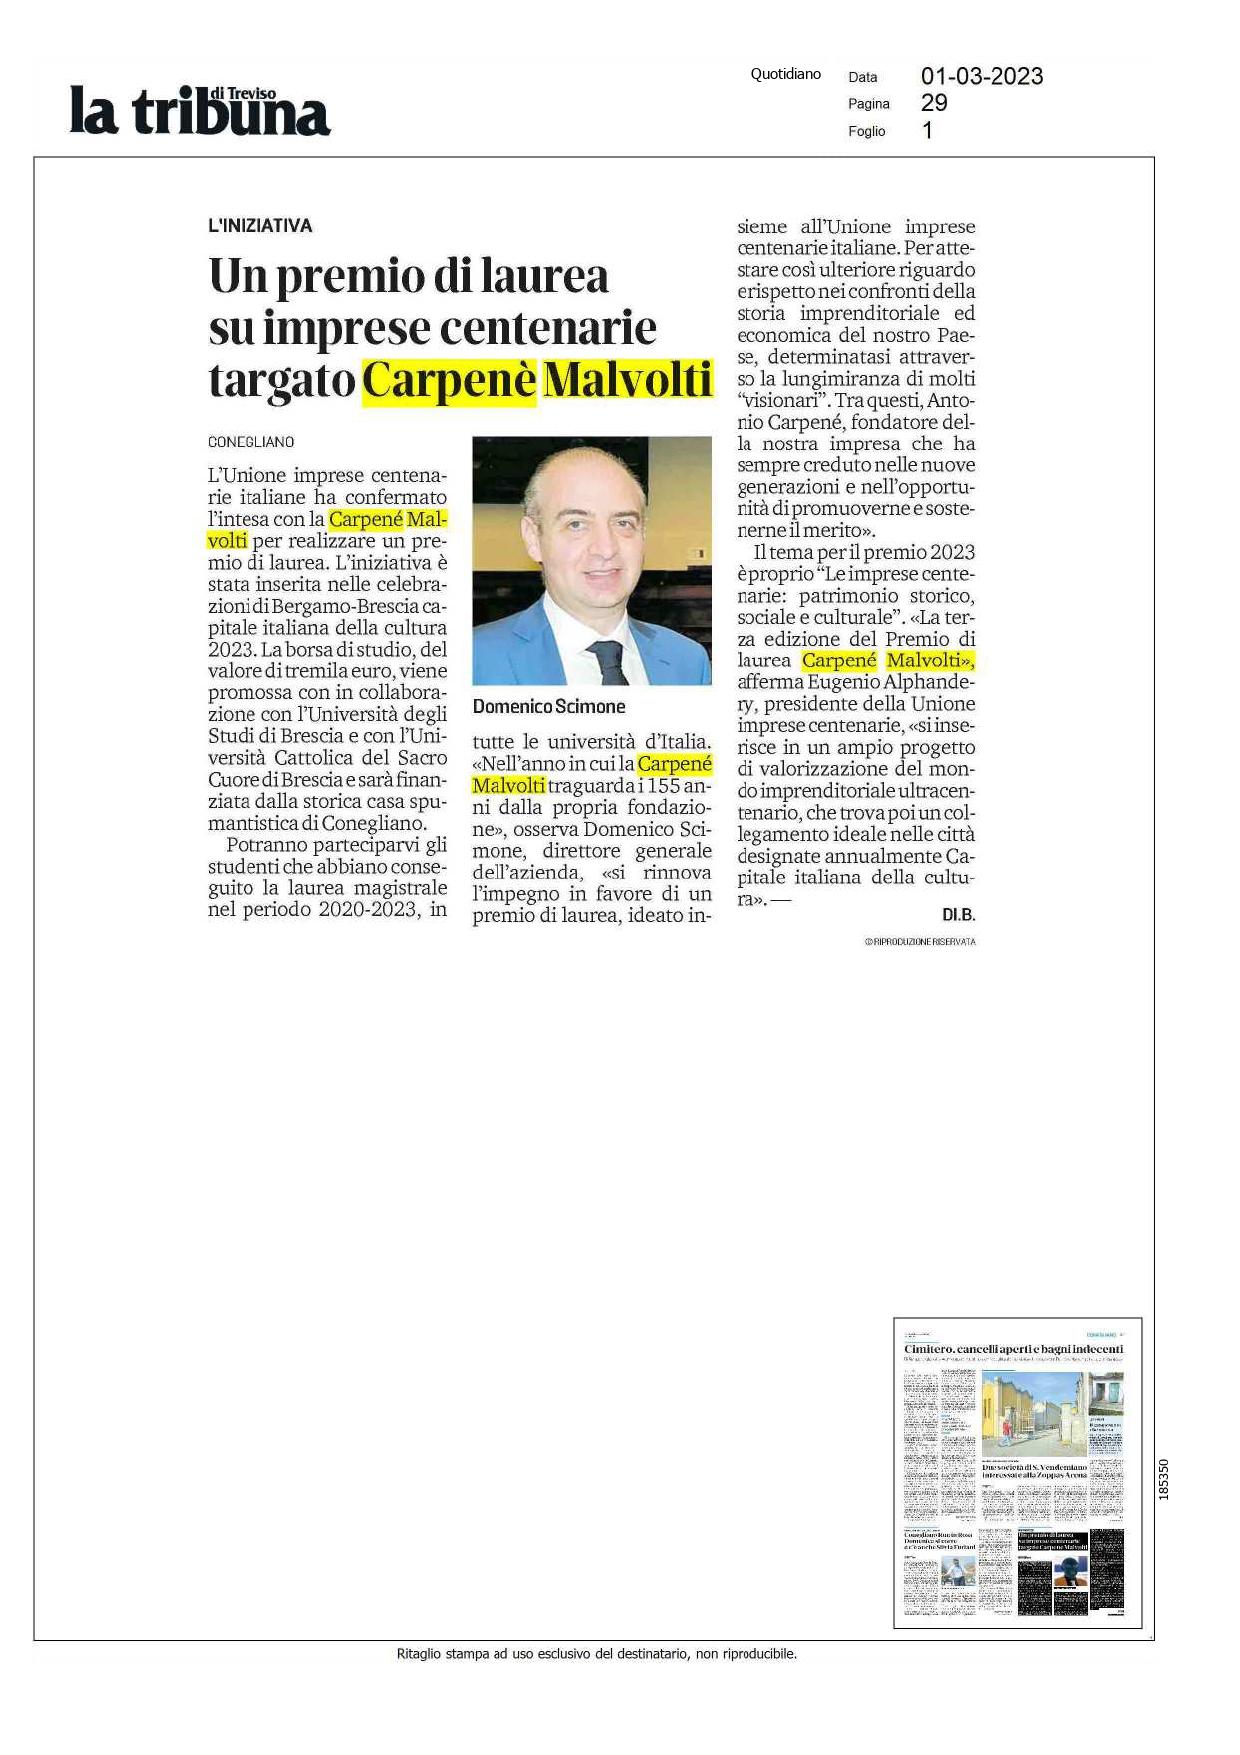 La Tribuna di Treviso Un premio di laurea sulla imprese centenarie targato Carpenè Malvolti page 0001 1